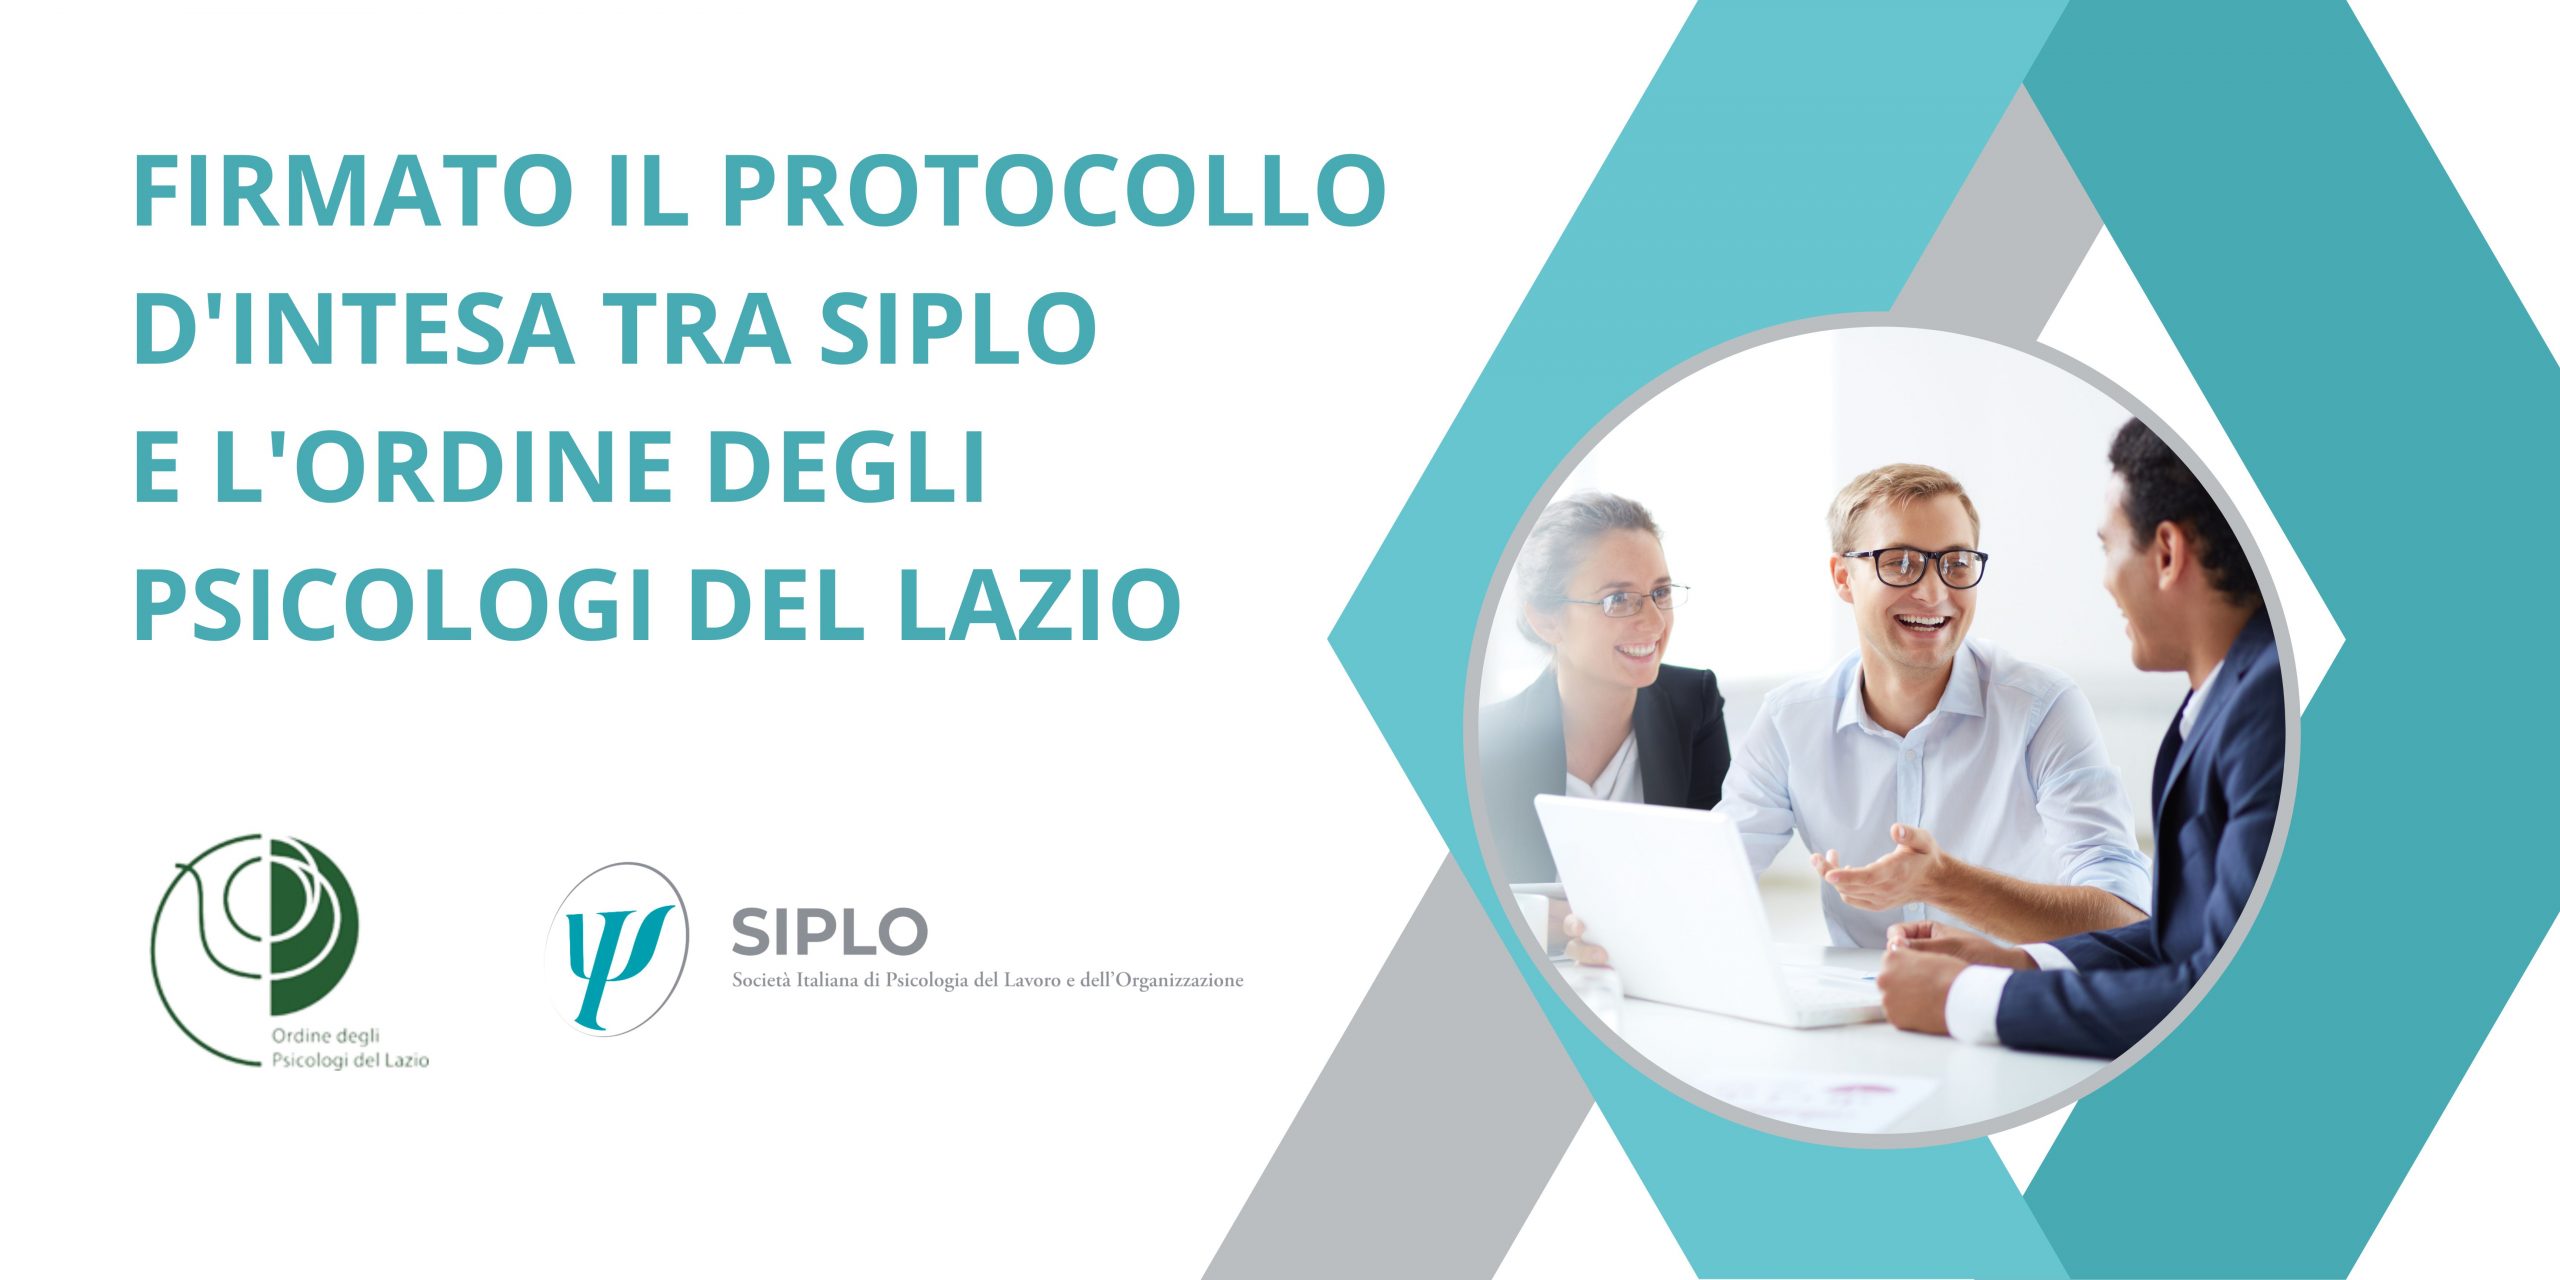 Il protocollo d’intesa tra SIPLO e l’Ordine degli Psicologi del Lazio.